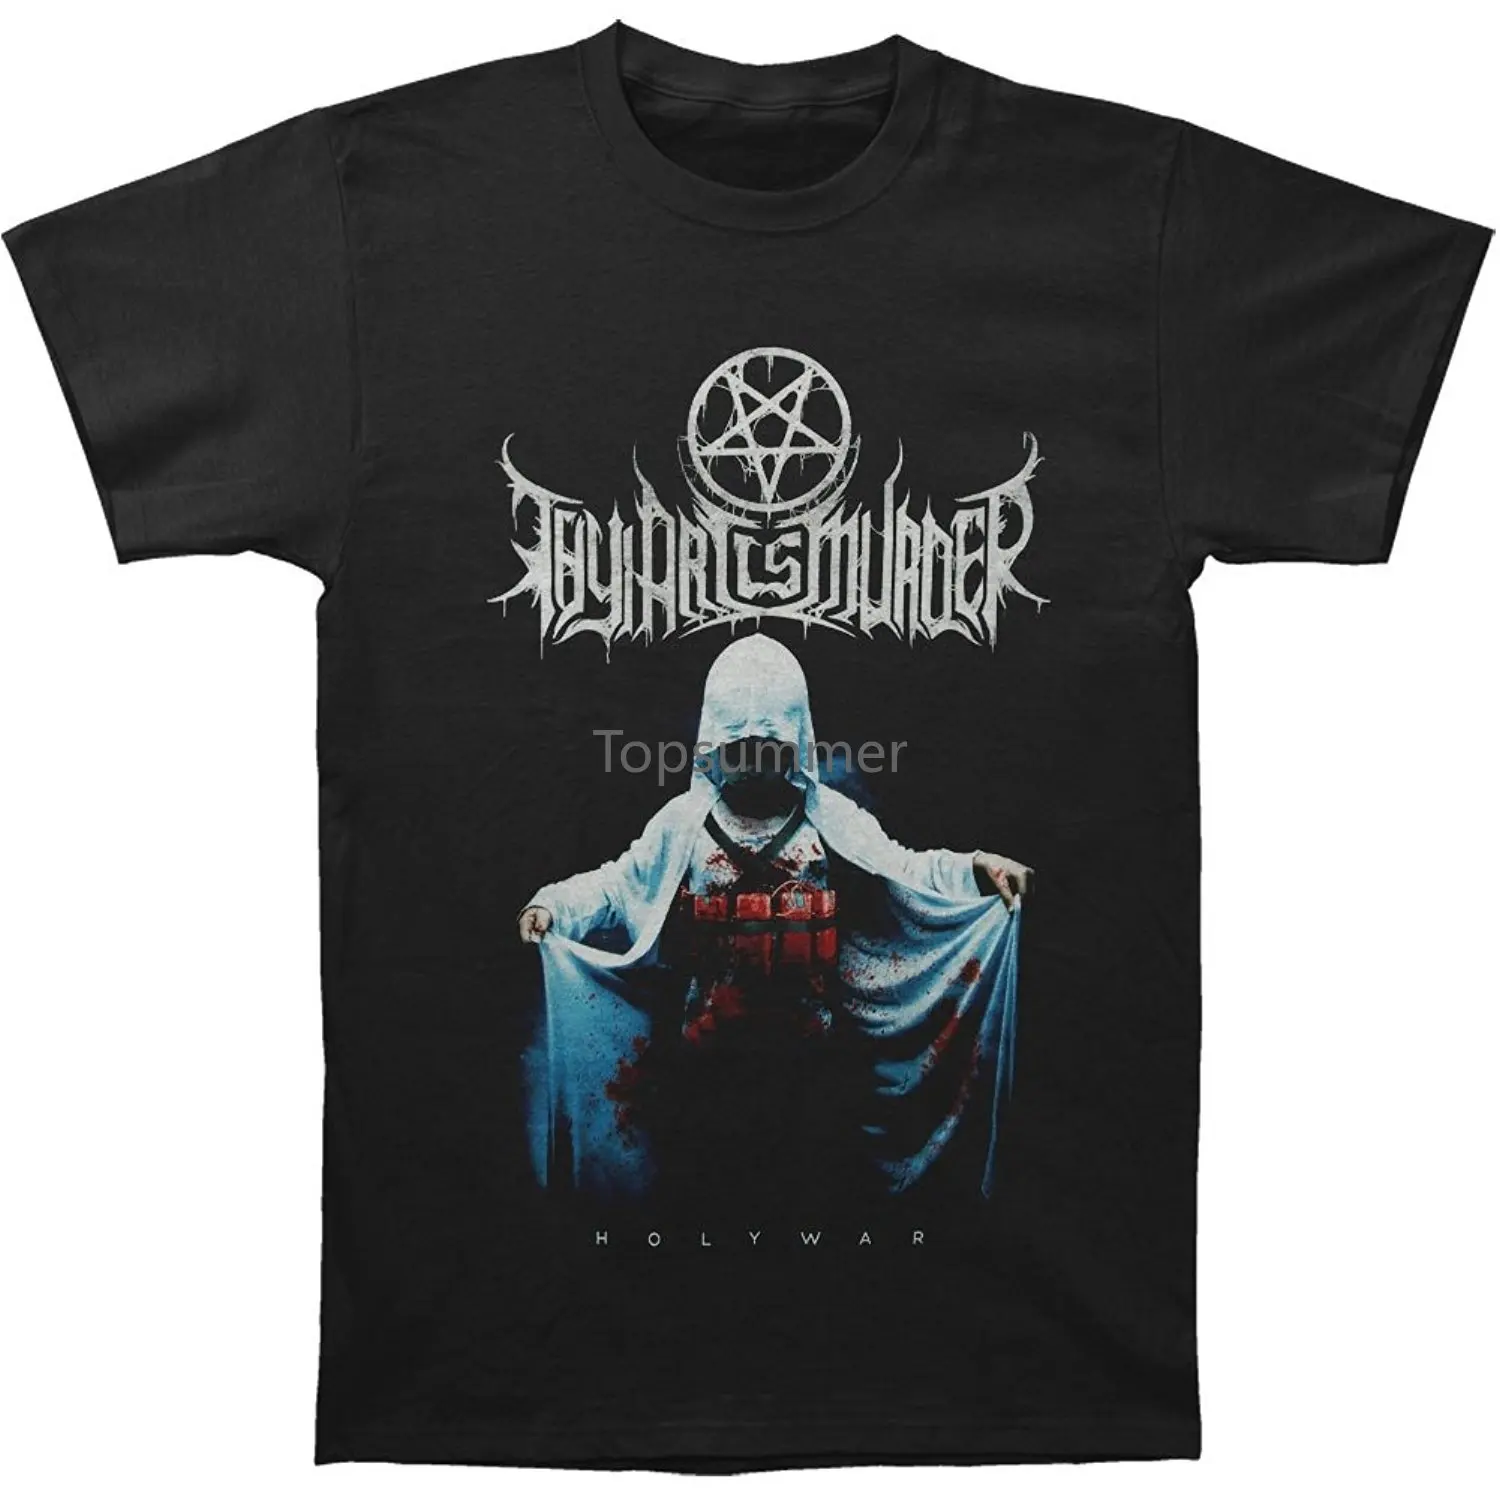 Забавные футболки, мужская черная футболка с изображением твоего искусства и убийцы Святой войны